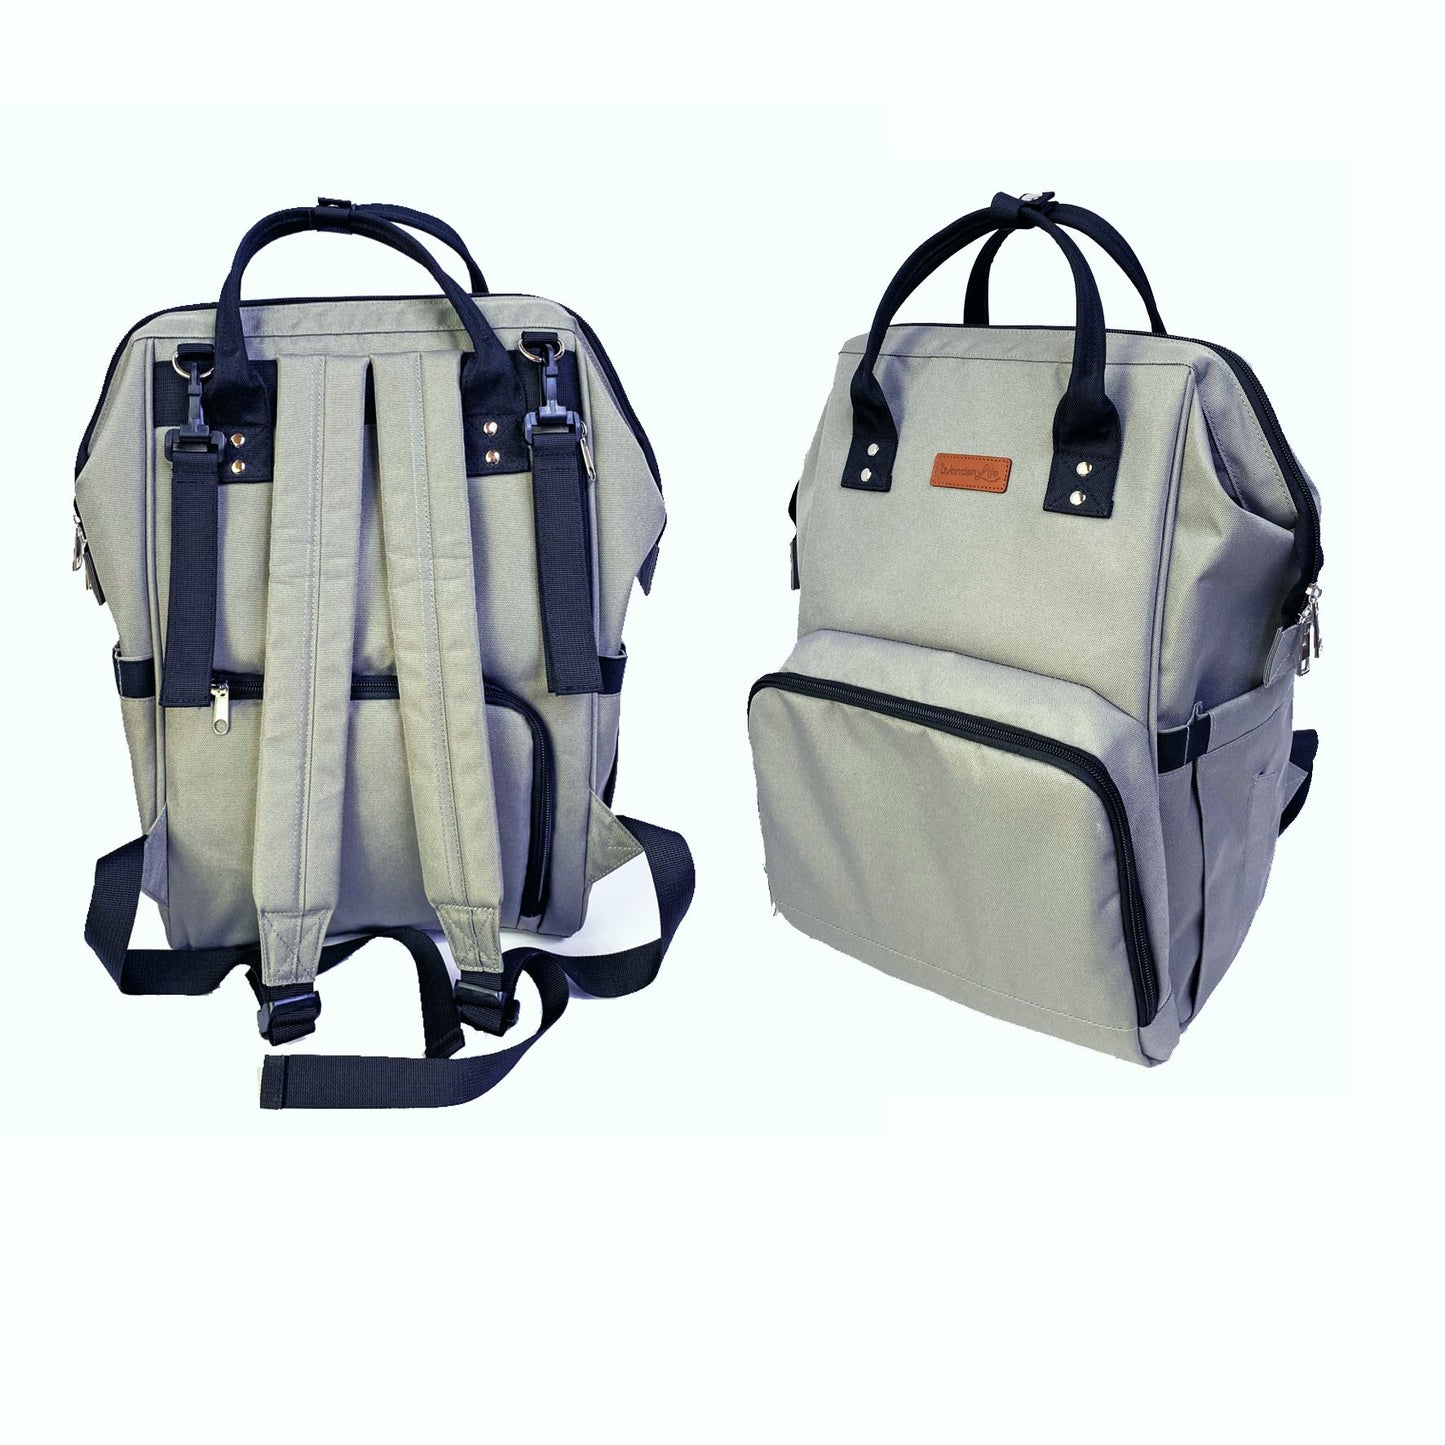 Wonderlife - Backpack Backpack